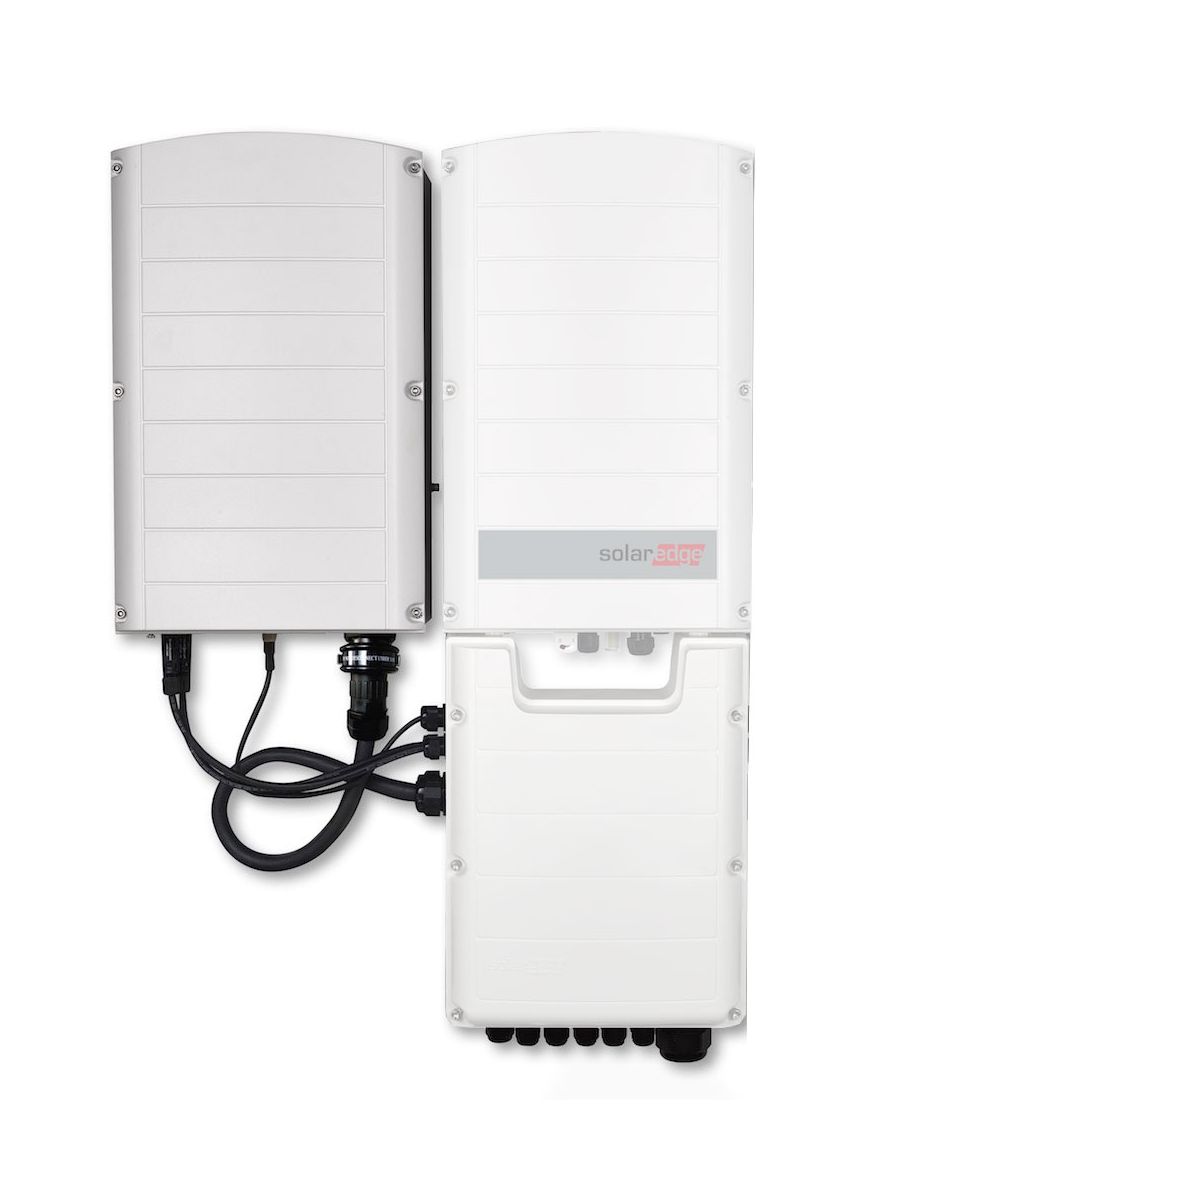 SolarEdge 3PH Inverter, With synergy technology, 55kW SE55K-FULL-BNY4 - 2